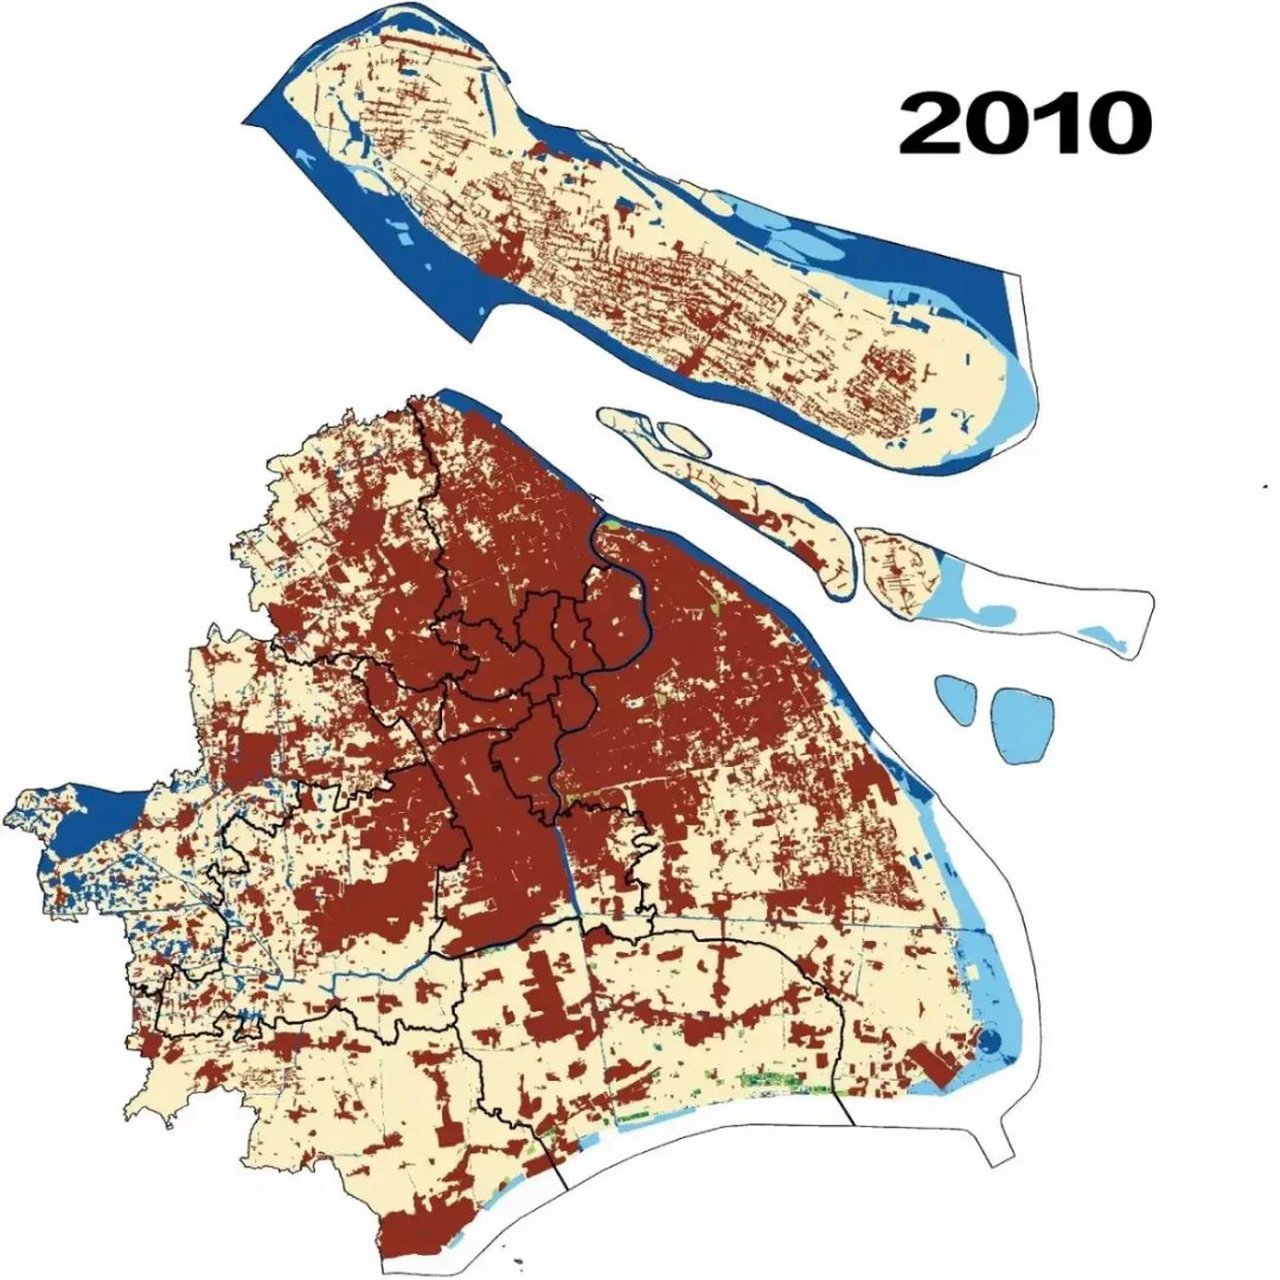 上海近20年城市扩张情况: 2000年城市建成区面积550km05 2010年城市